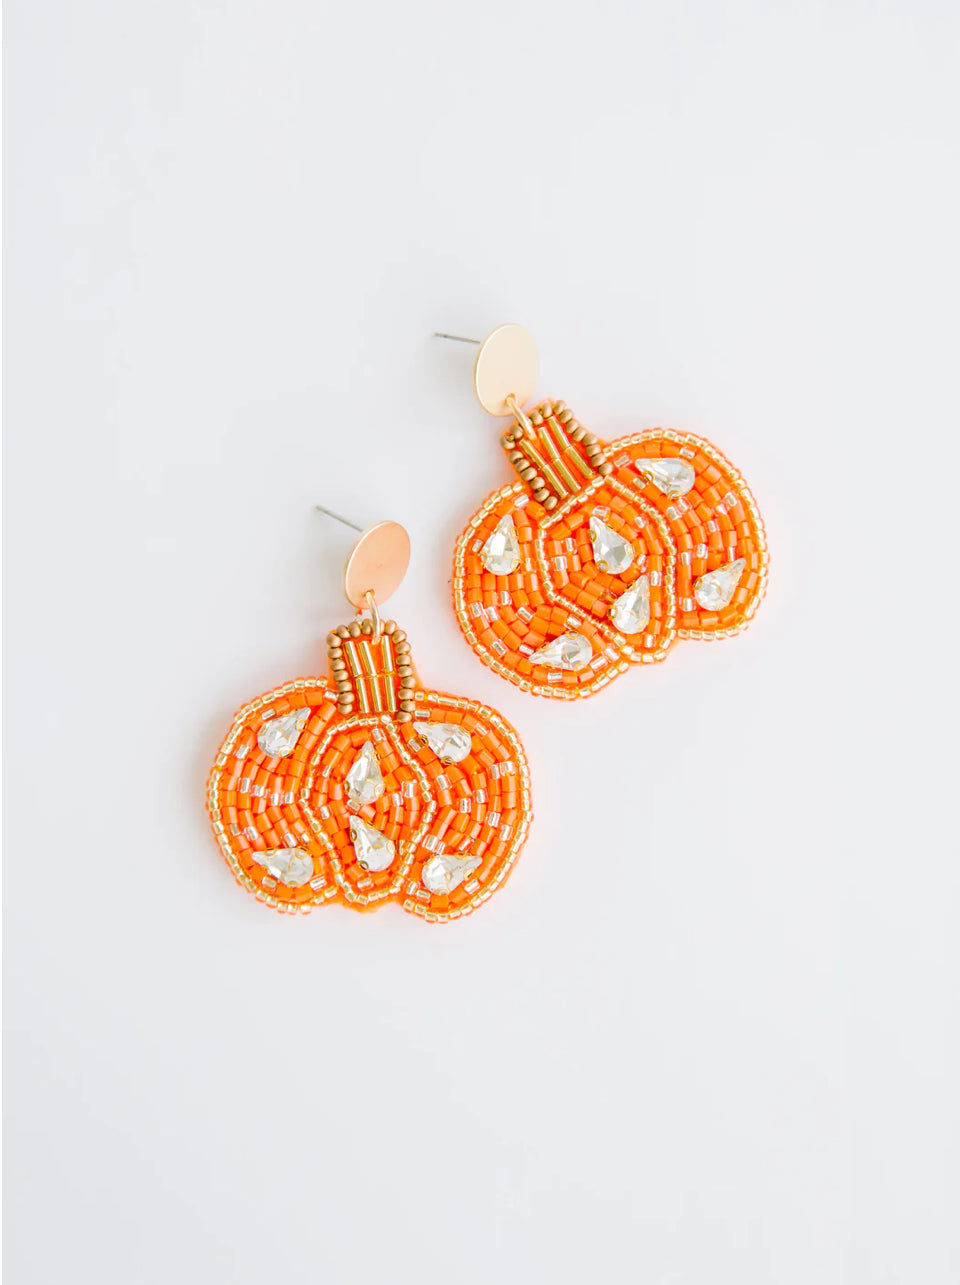 Pumpkin Seed Bead Earrings *FINAL SALE*